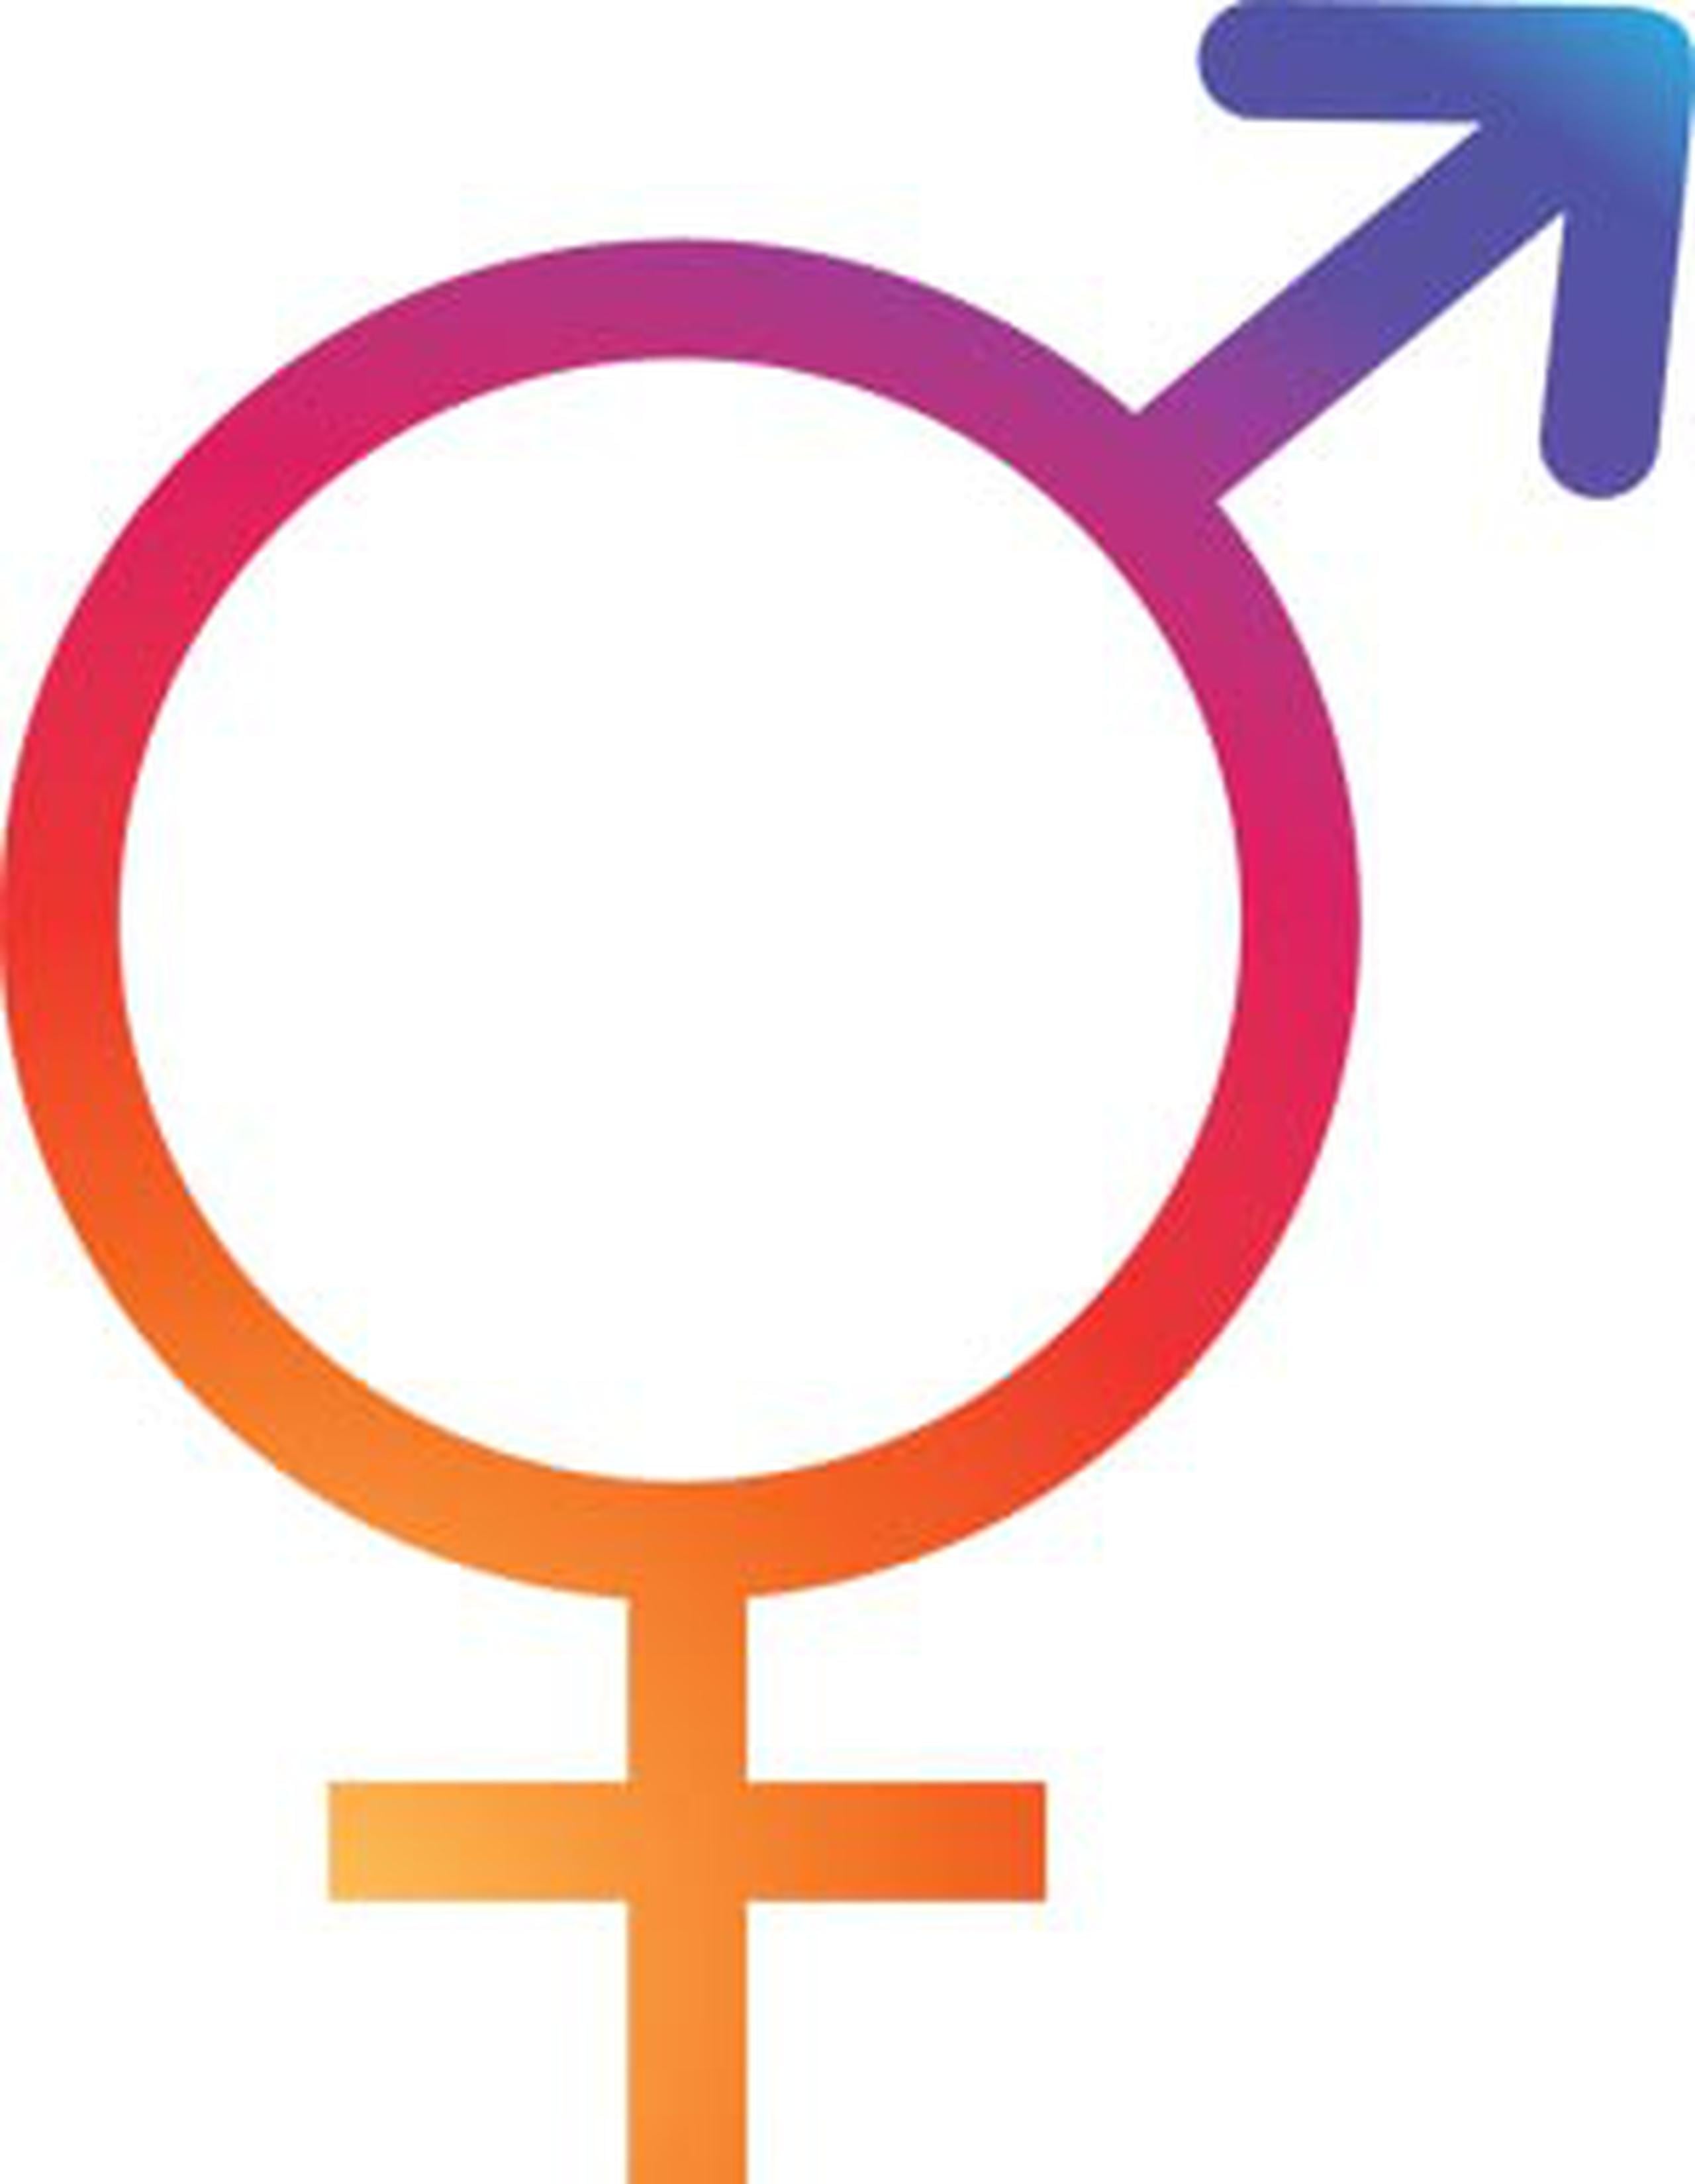 La intersexualidad puede tener diversas causas, como genéticas u hormonales.